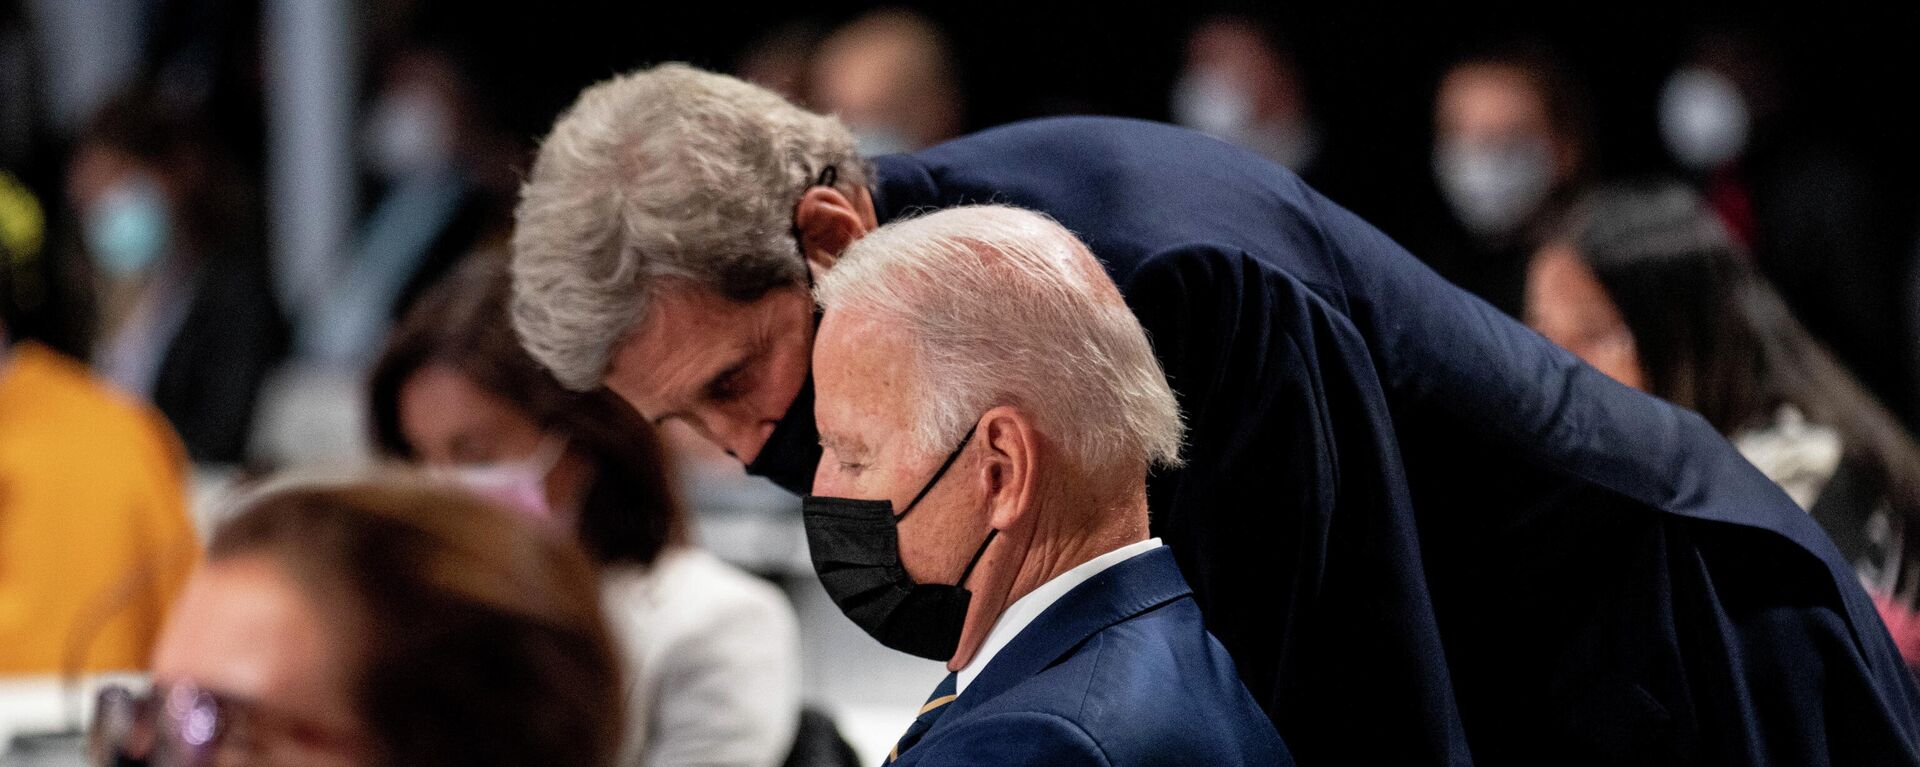 El presidente de EEUU, Joe Biden, durante la Conferencia de las Naciones Unidas sobre el Cambio Climático de 2021 (COP26) en Glasgow, Escocia, el 1 de noviembre de 2021 - Sputnik Mundo, 1920, 08.11.2021